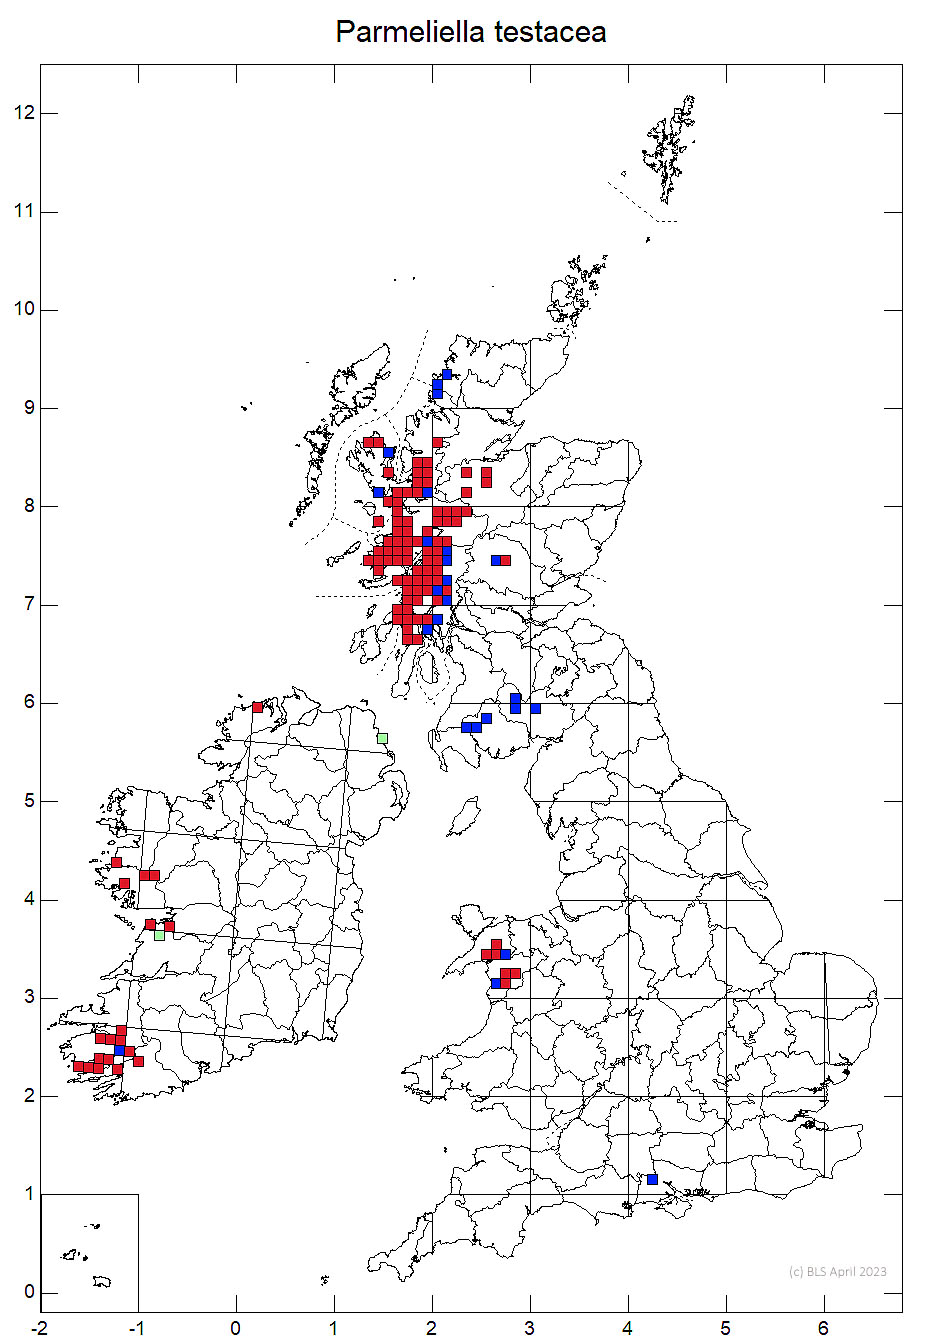 Parmeliella testacea 10km sq distribution map